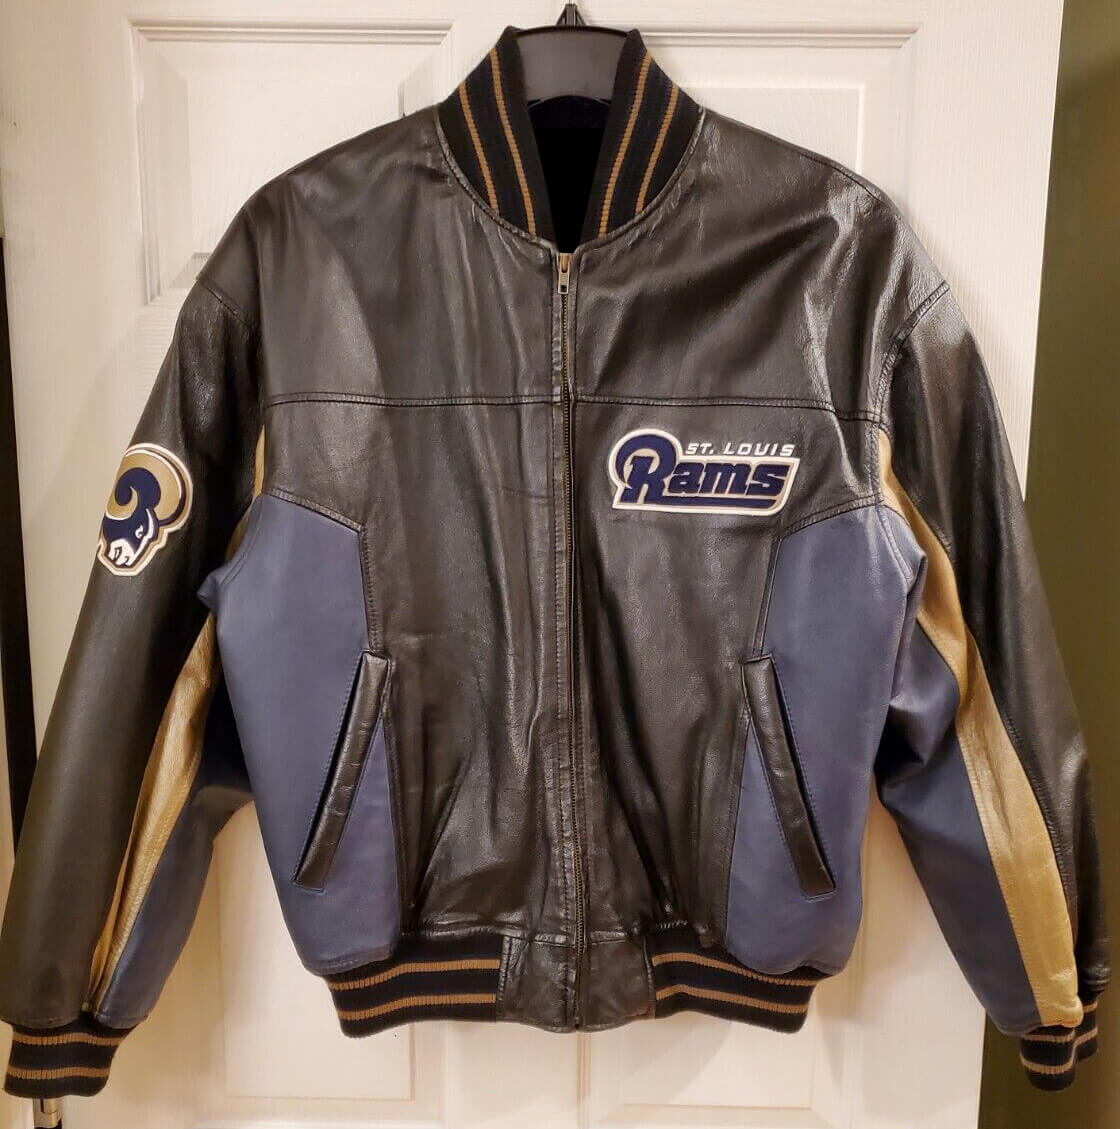 Buy NFL Men's St. Louis Rams Slash Jacket (Millennium Blue/New